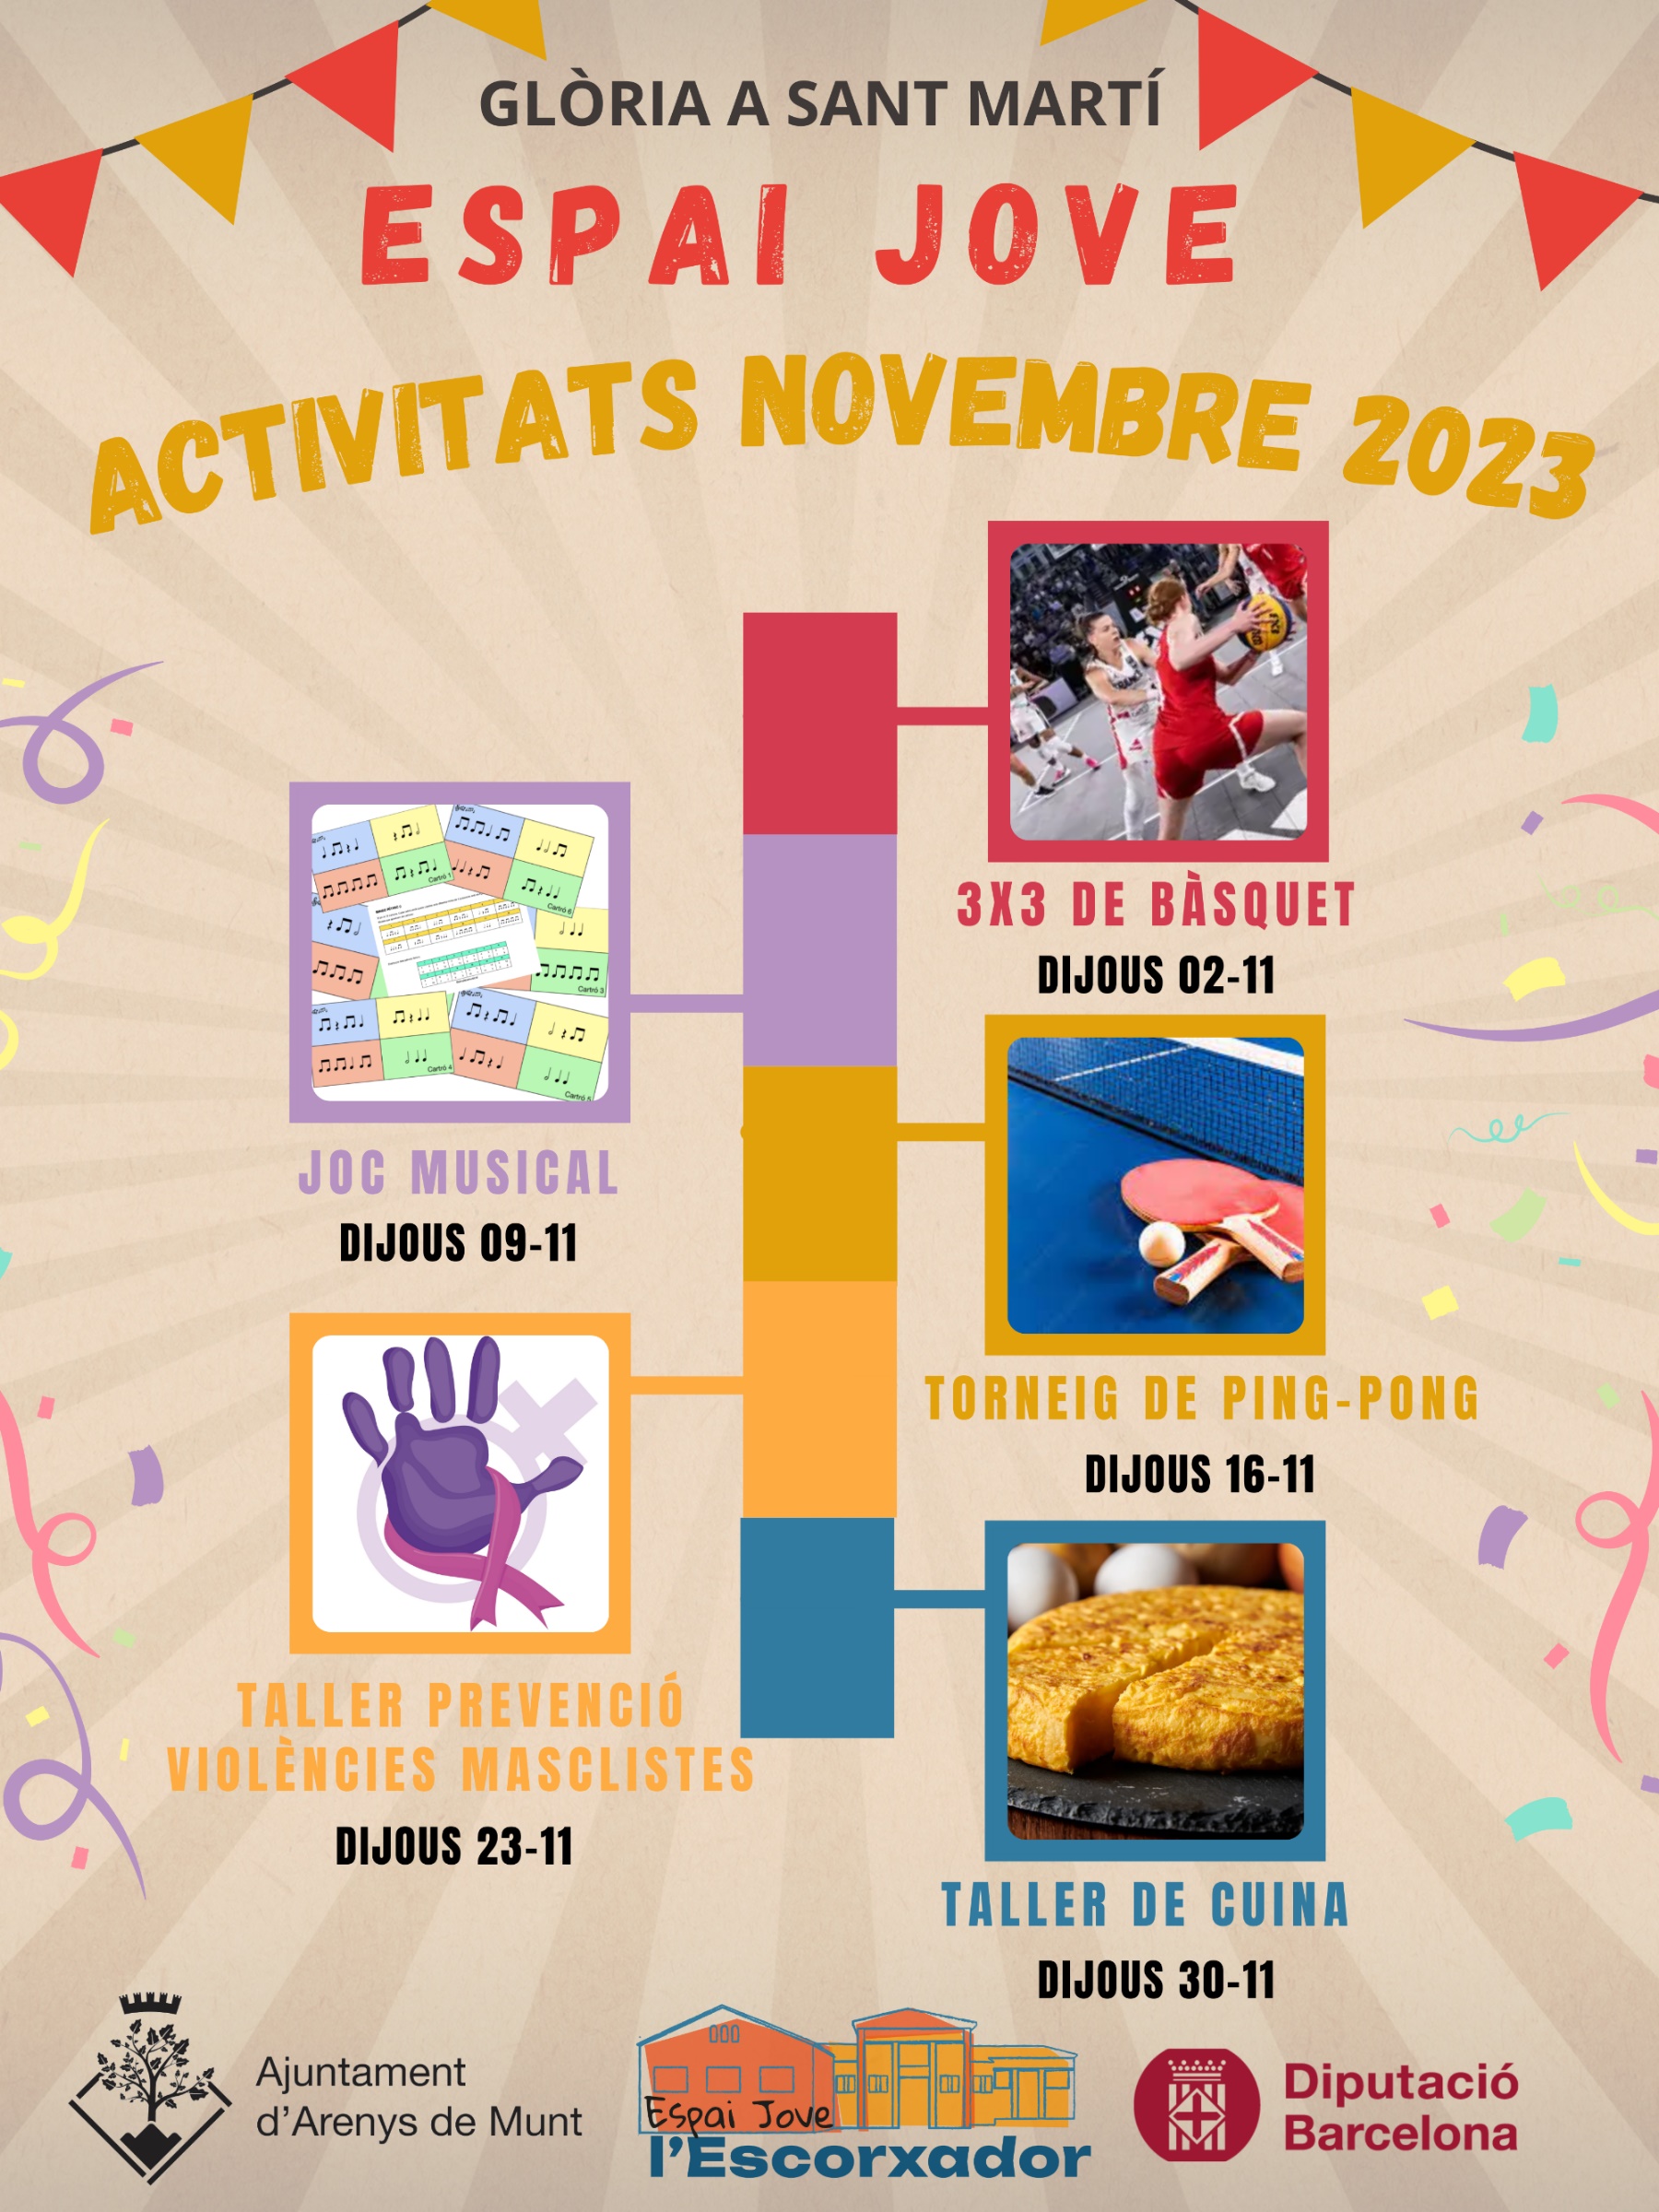 Activitats Espai Jove novembre 2023